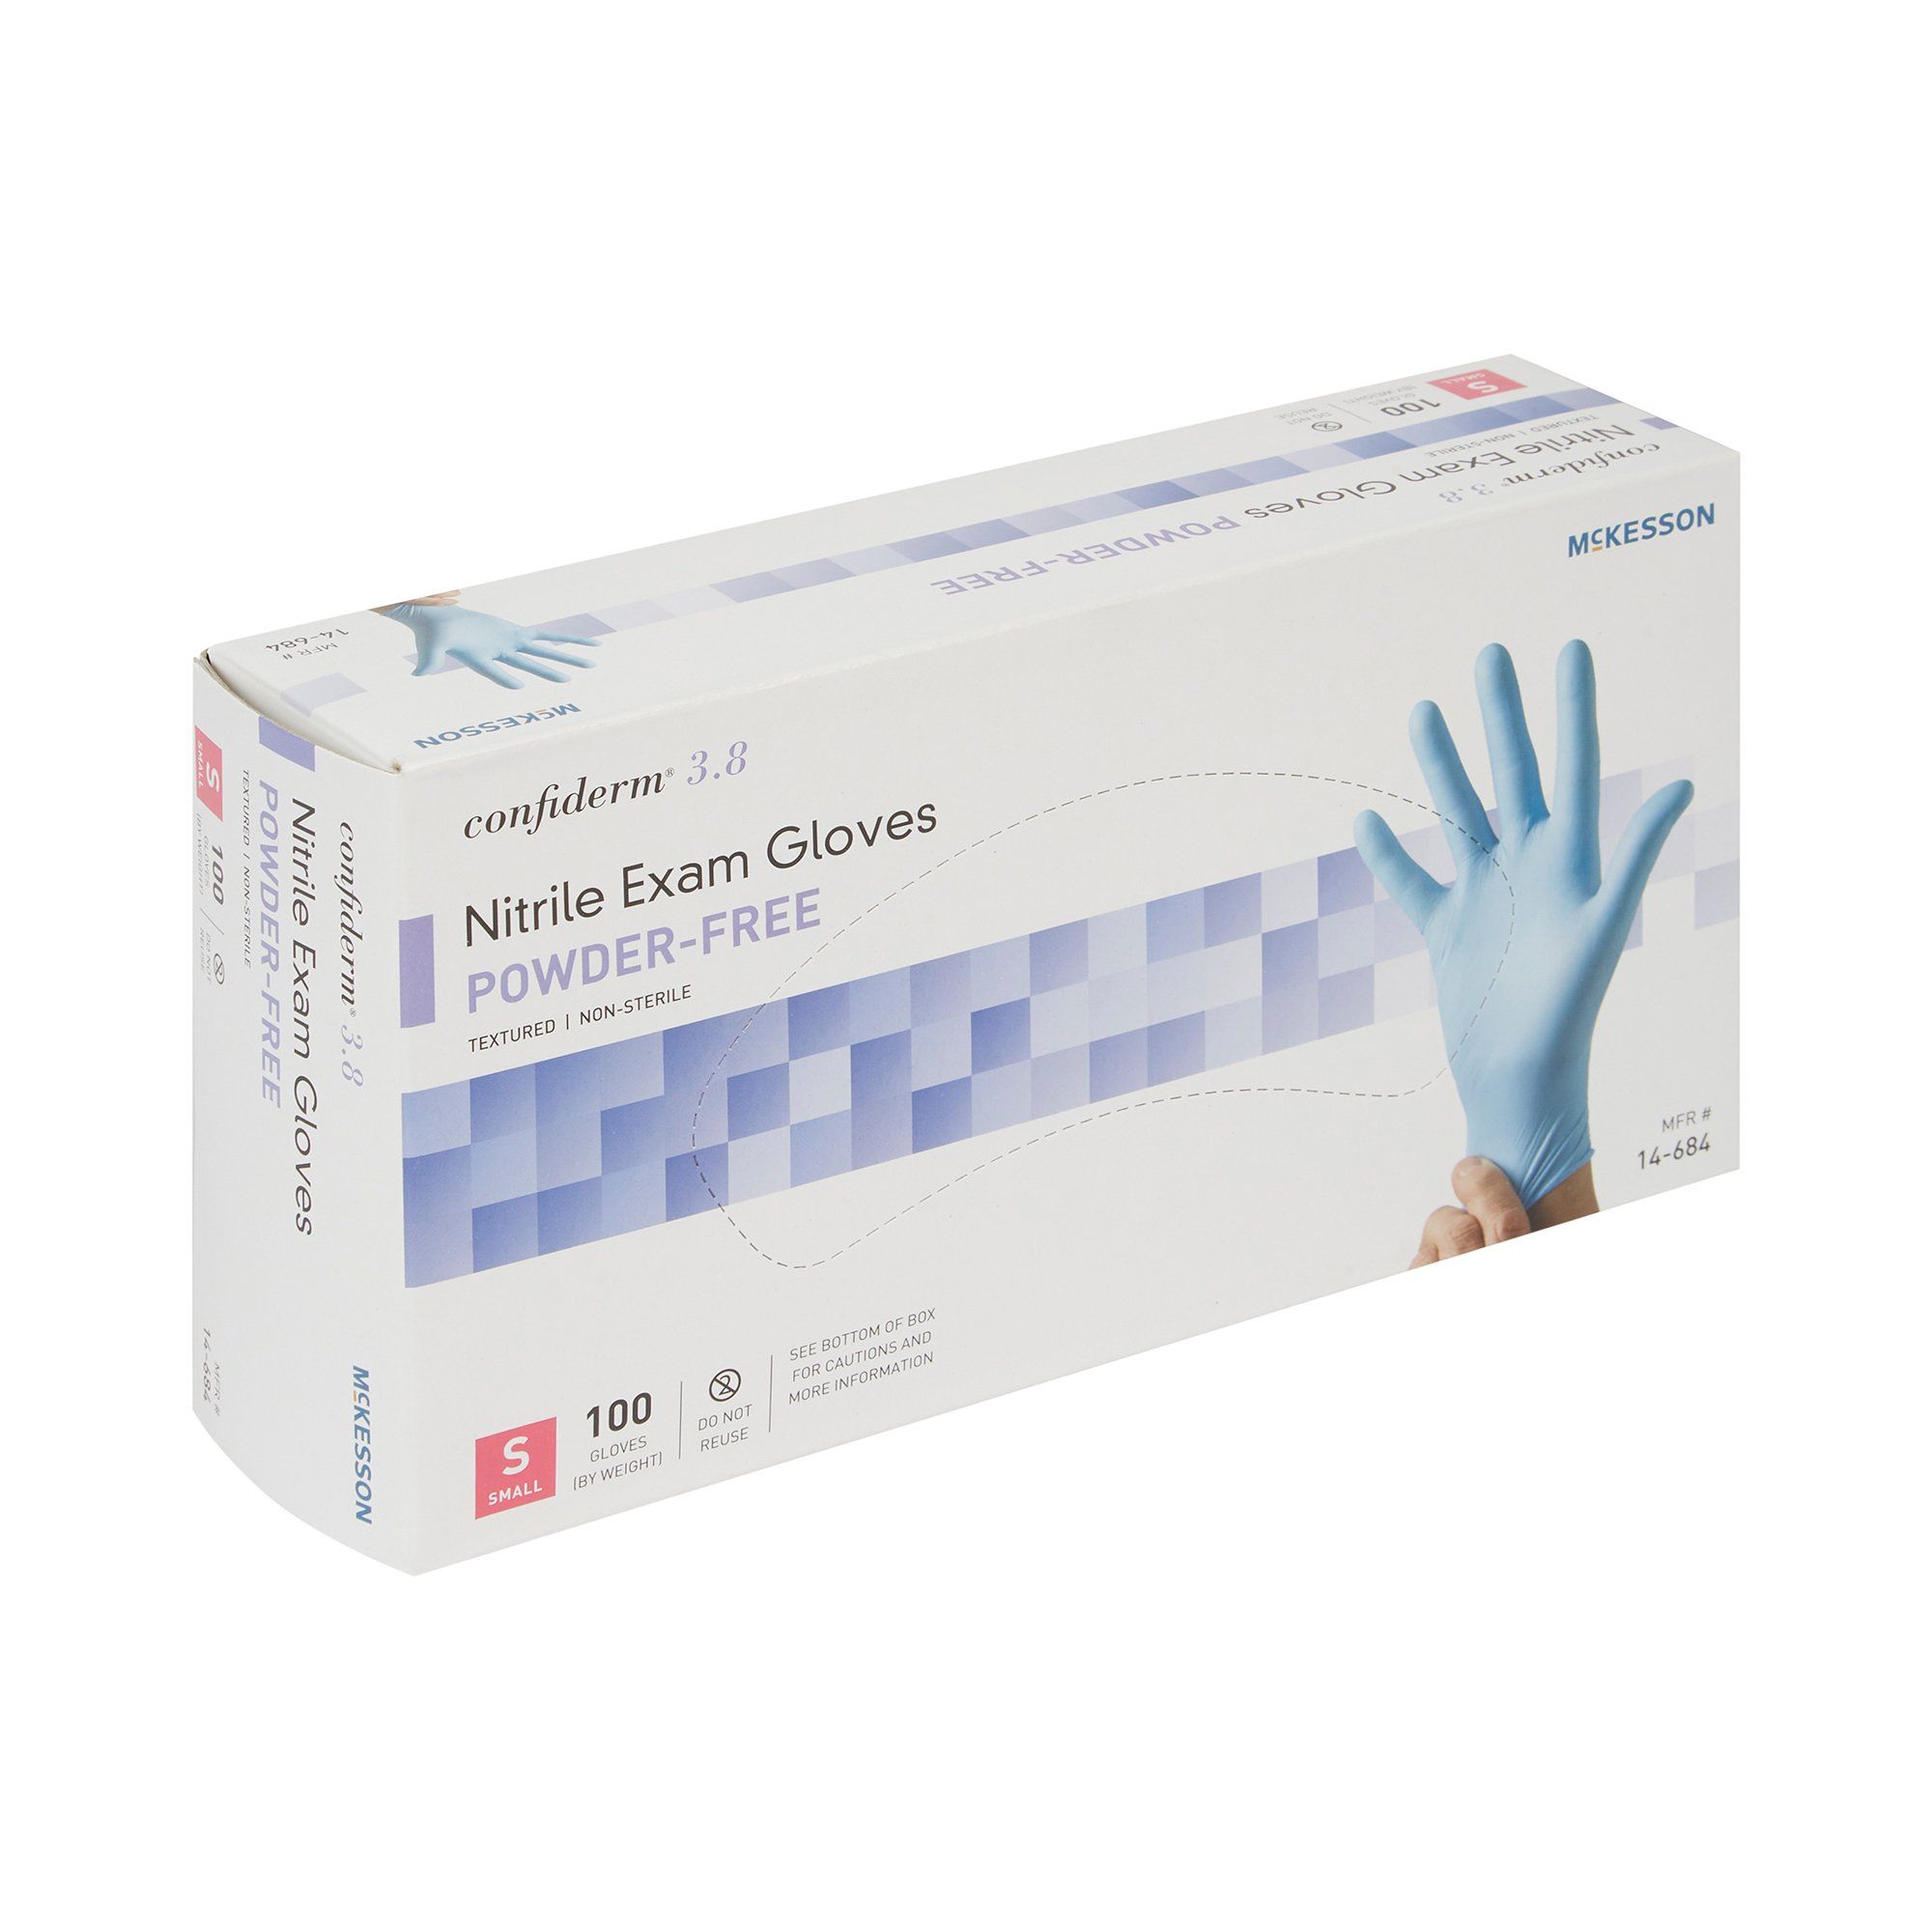 McKesson Confiderm® 3.8 Nitrile Exam Gloves, Small - 100 ct